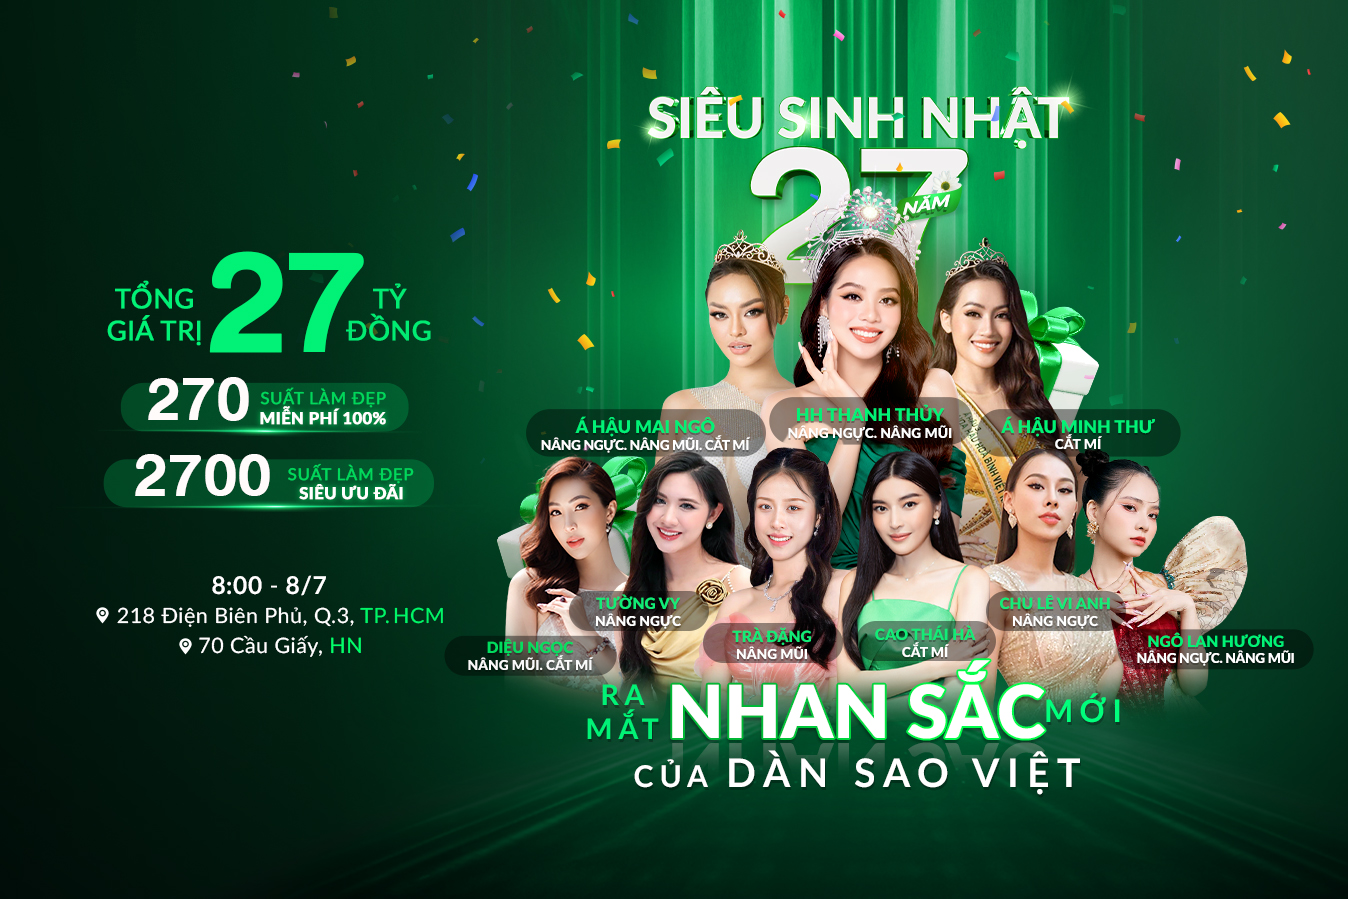 Dàn sao Việt “lột xác” tại siêu sinh nhật Thu Cúc - ảnh 1